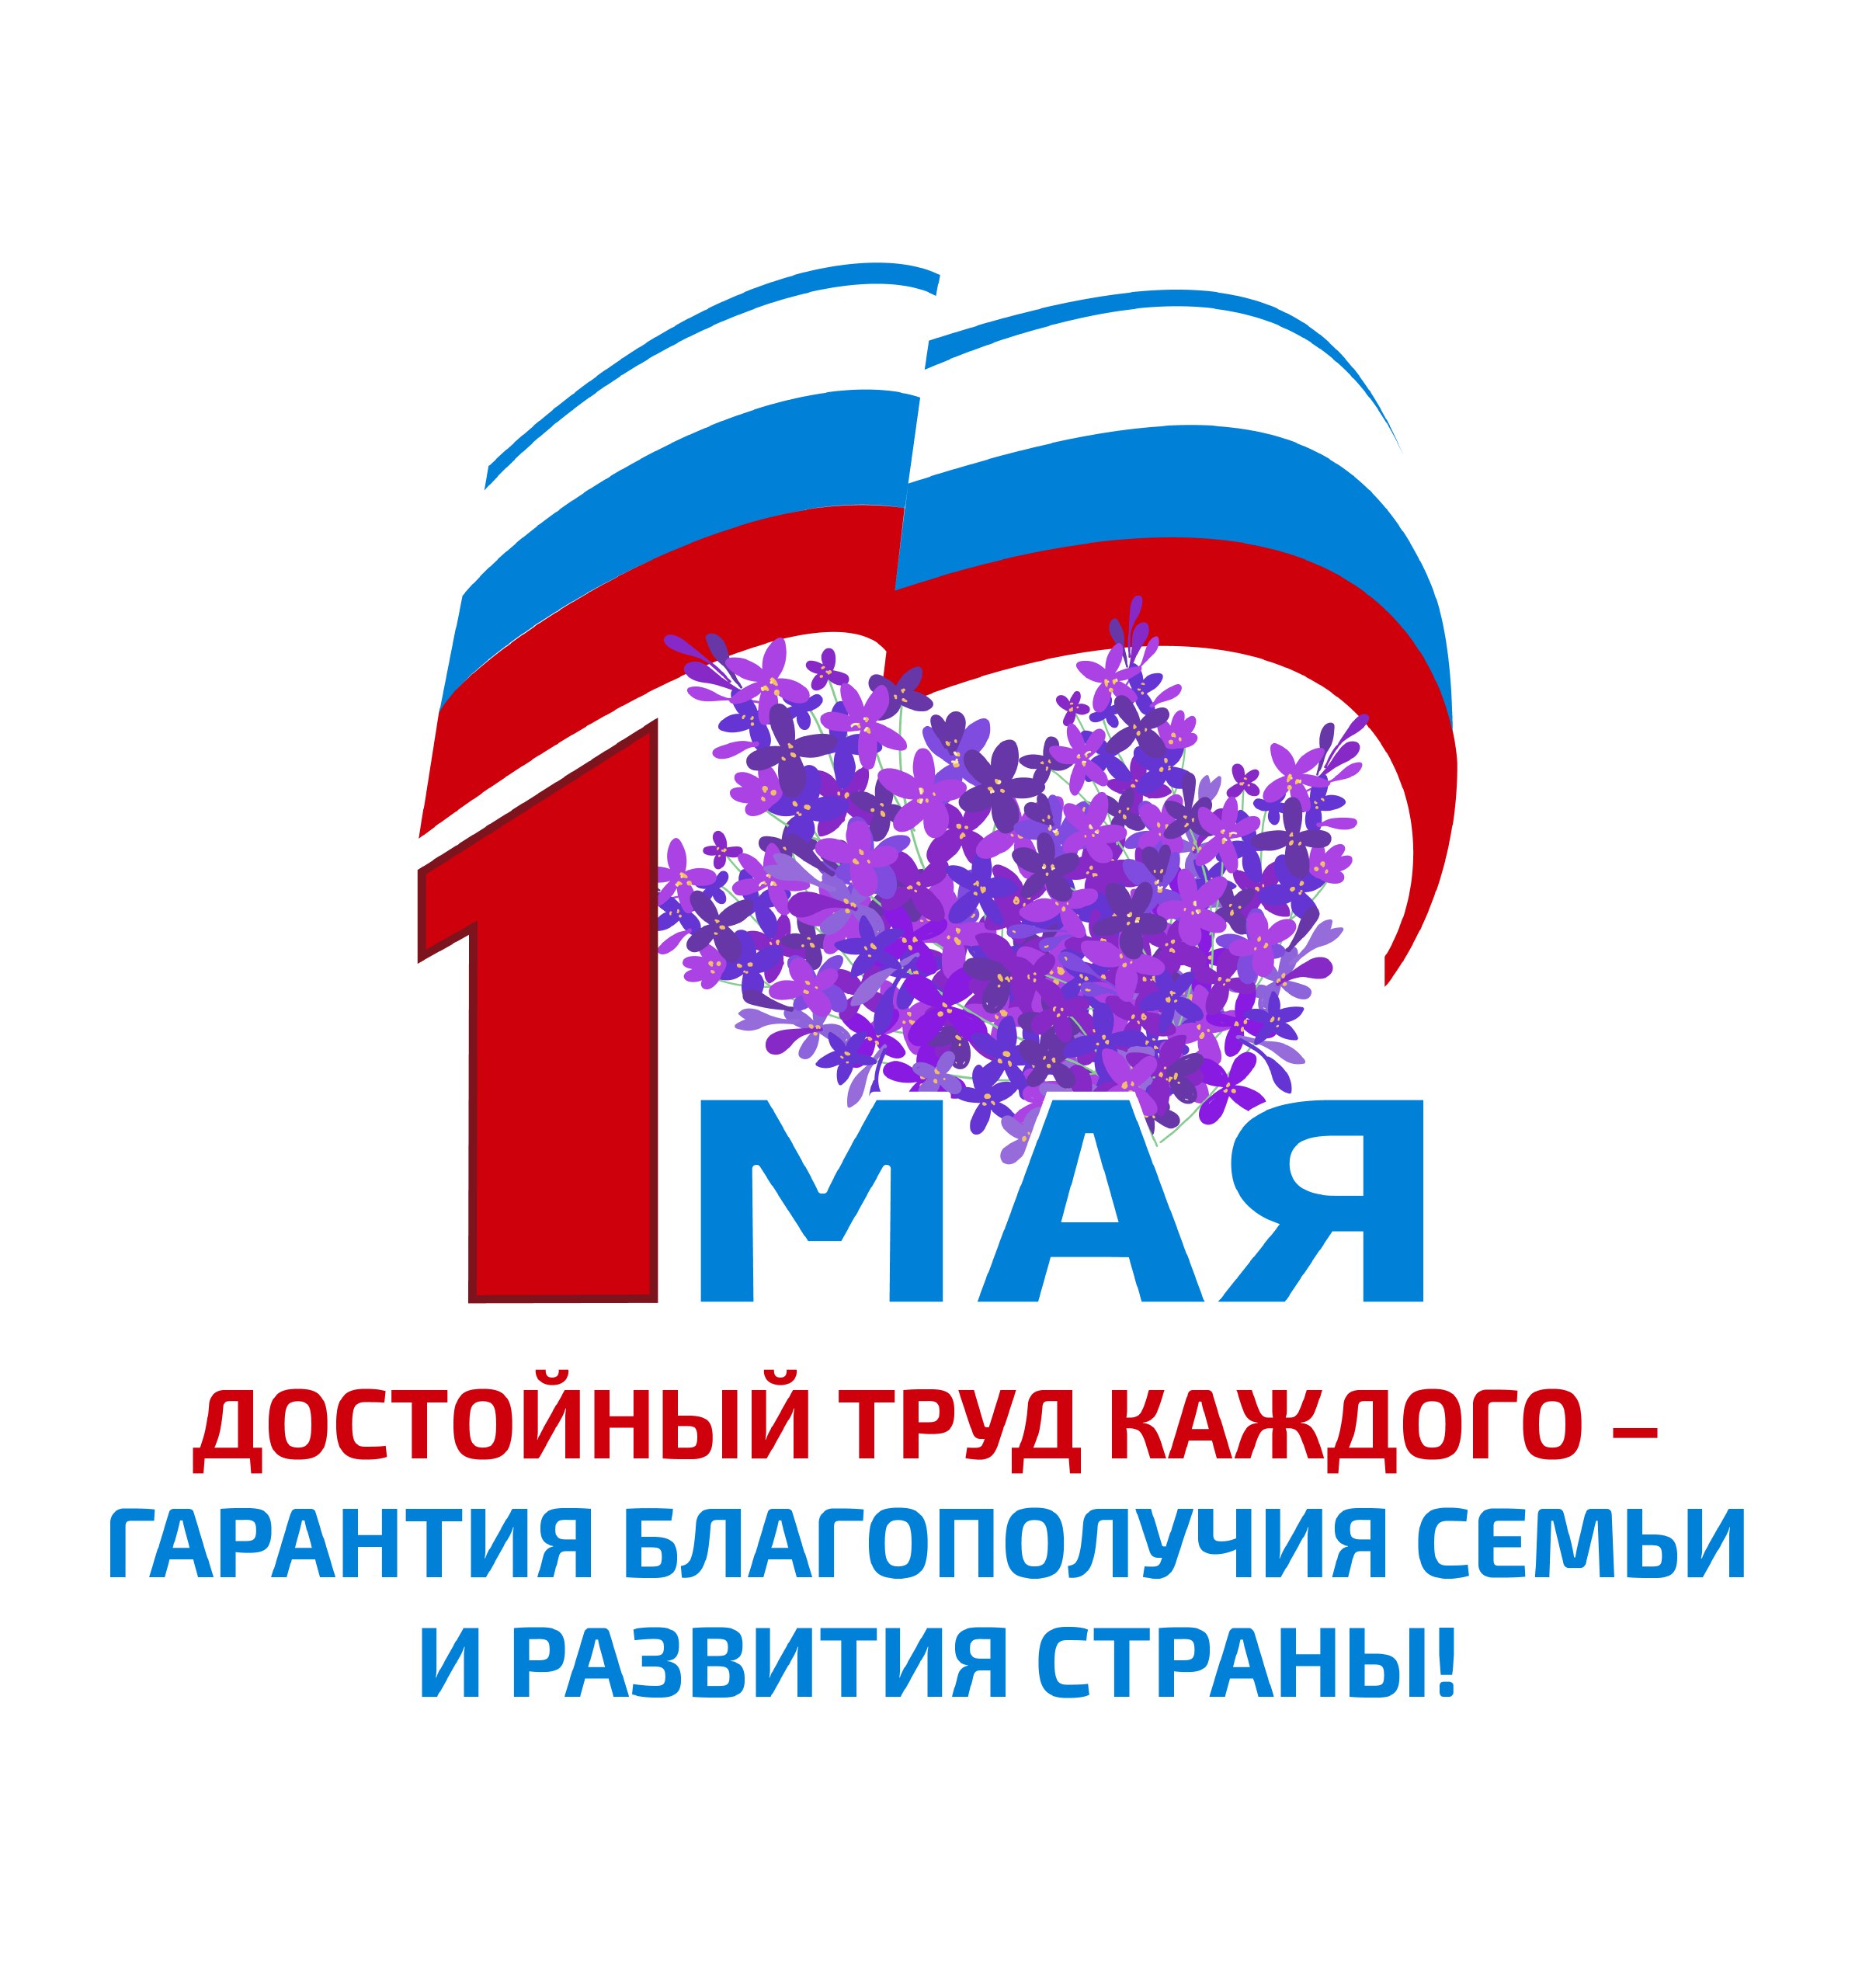 1 мая логотип